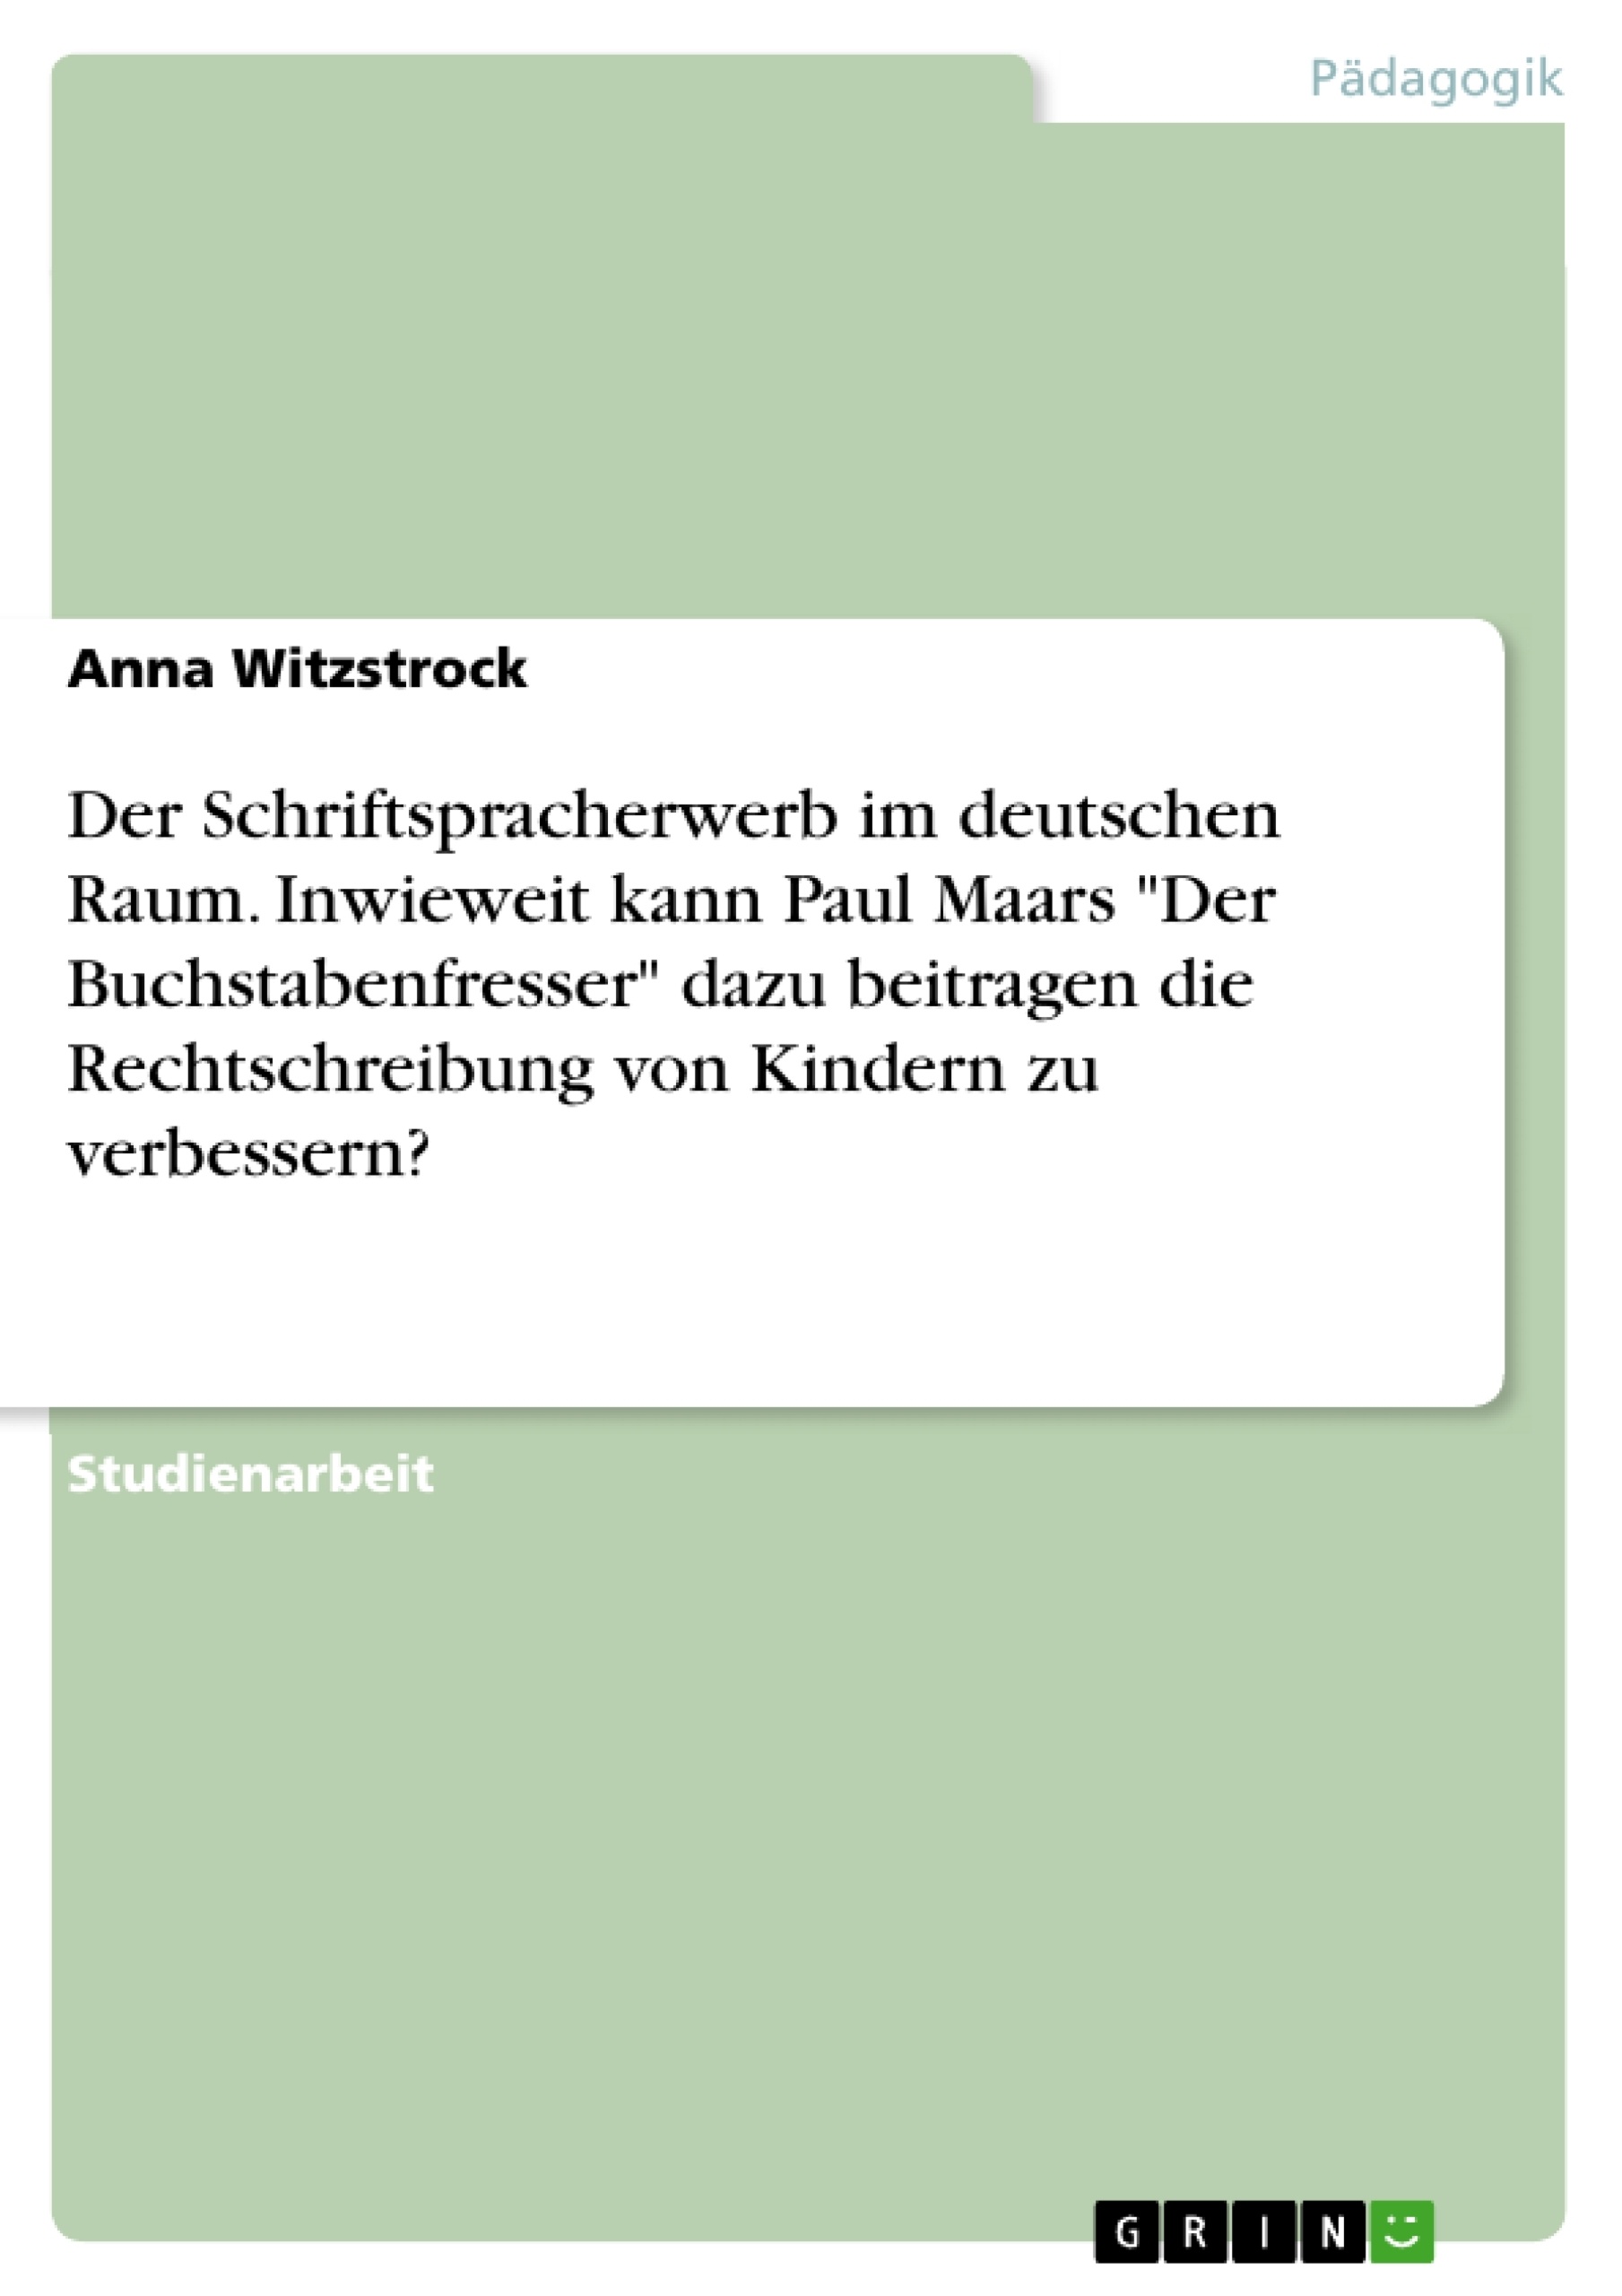 Title: Der Schriftspracherwerb im deutschen Raum. Inwieweit kann Paul Maars "Der Buchstabenfresser" dazu beitragen die Rechtschreibung von Kindern zu verbessern?